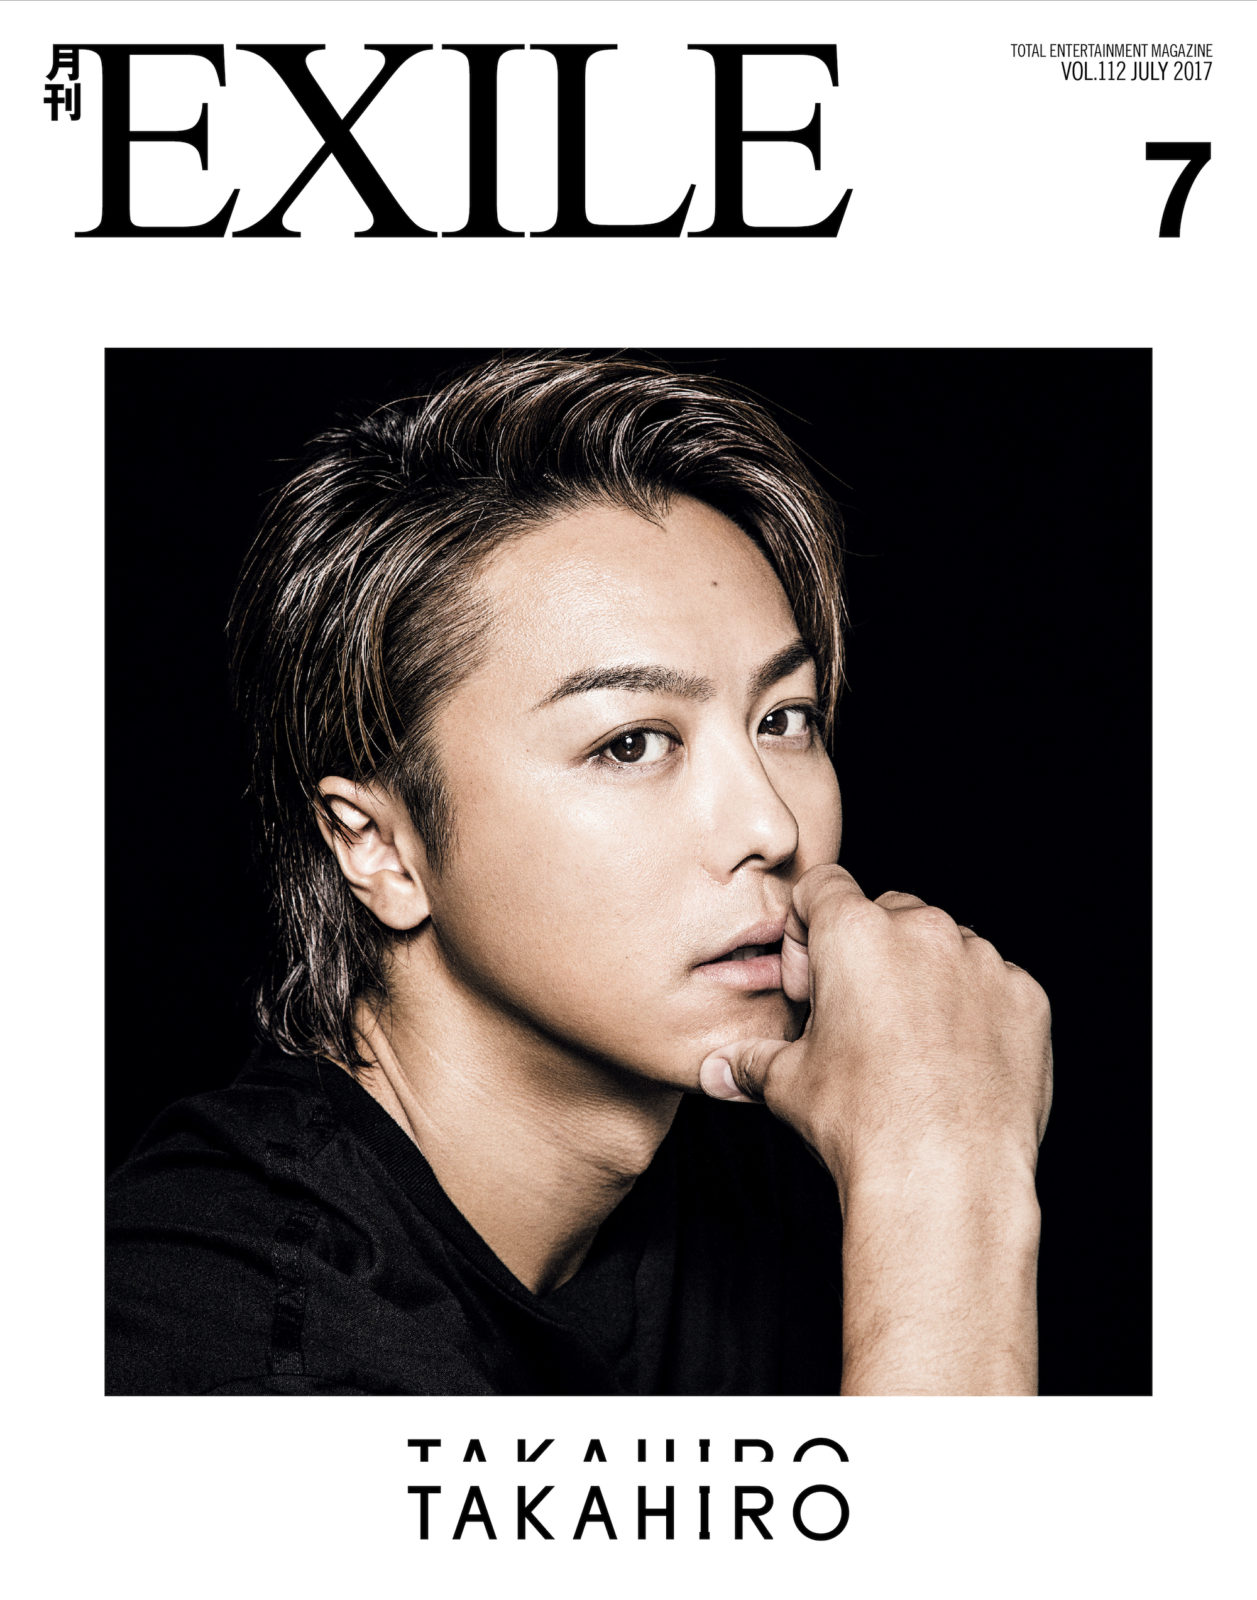 EXILE TAKAHIRO、「月刊EXILE 」約3年ぶりとなる単独カバーで